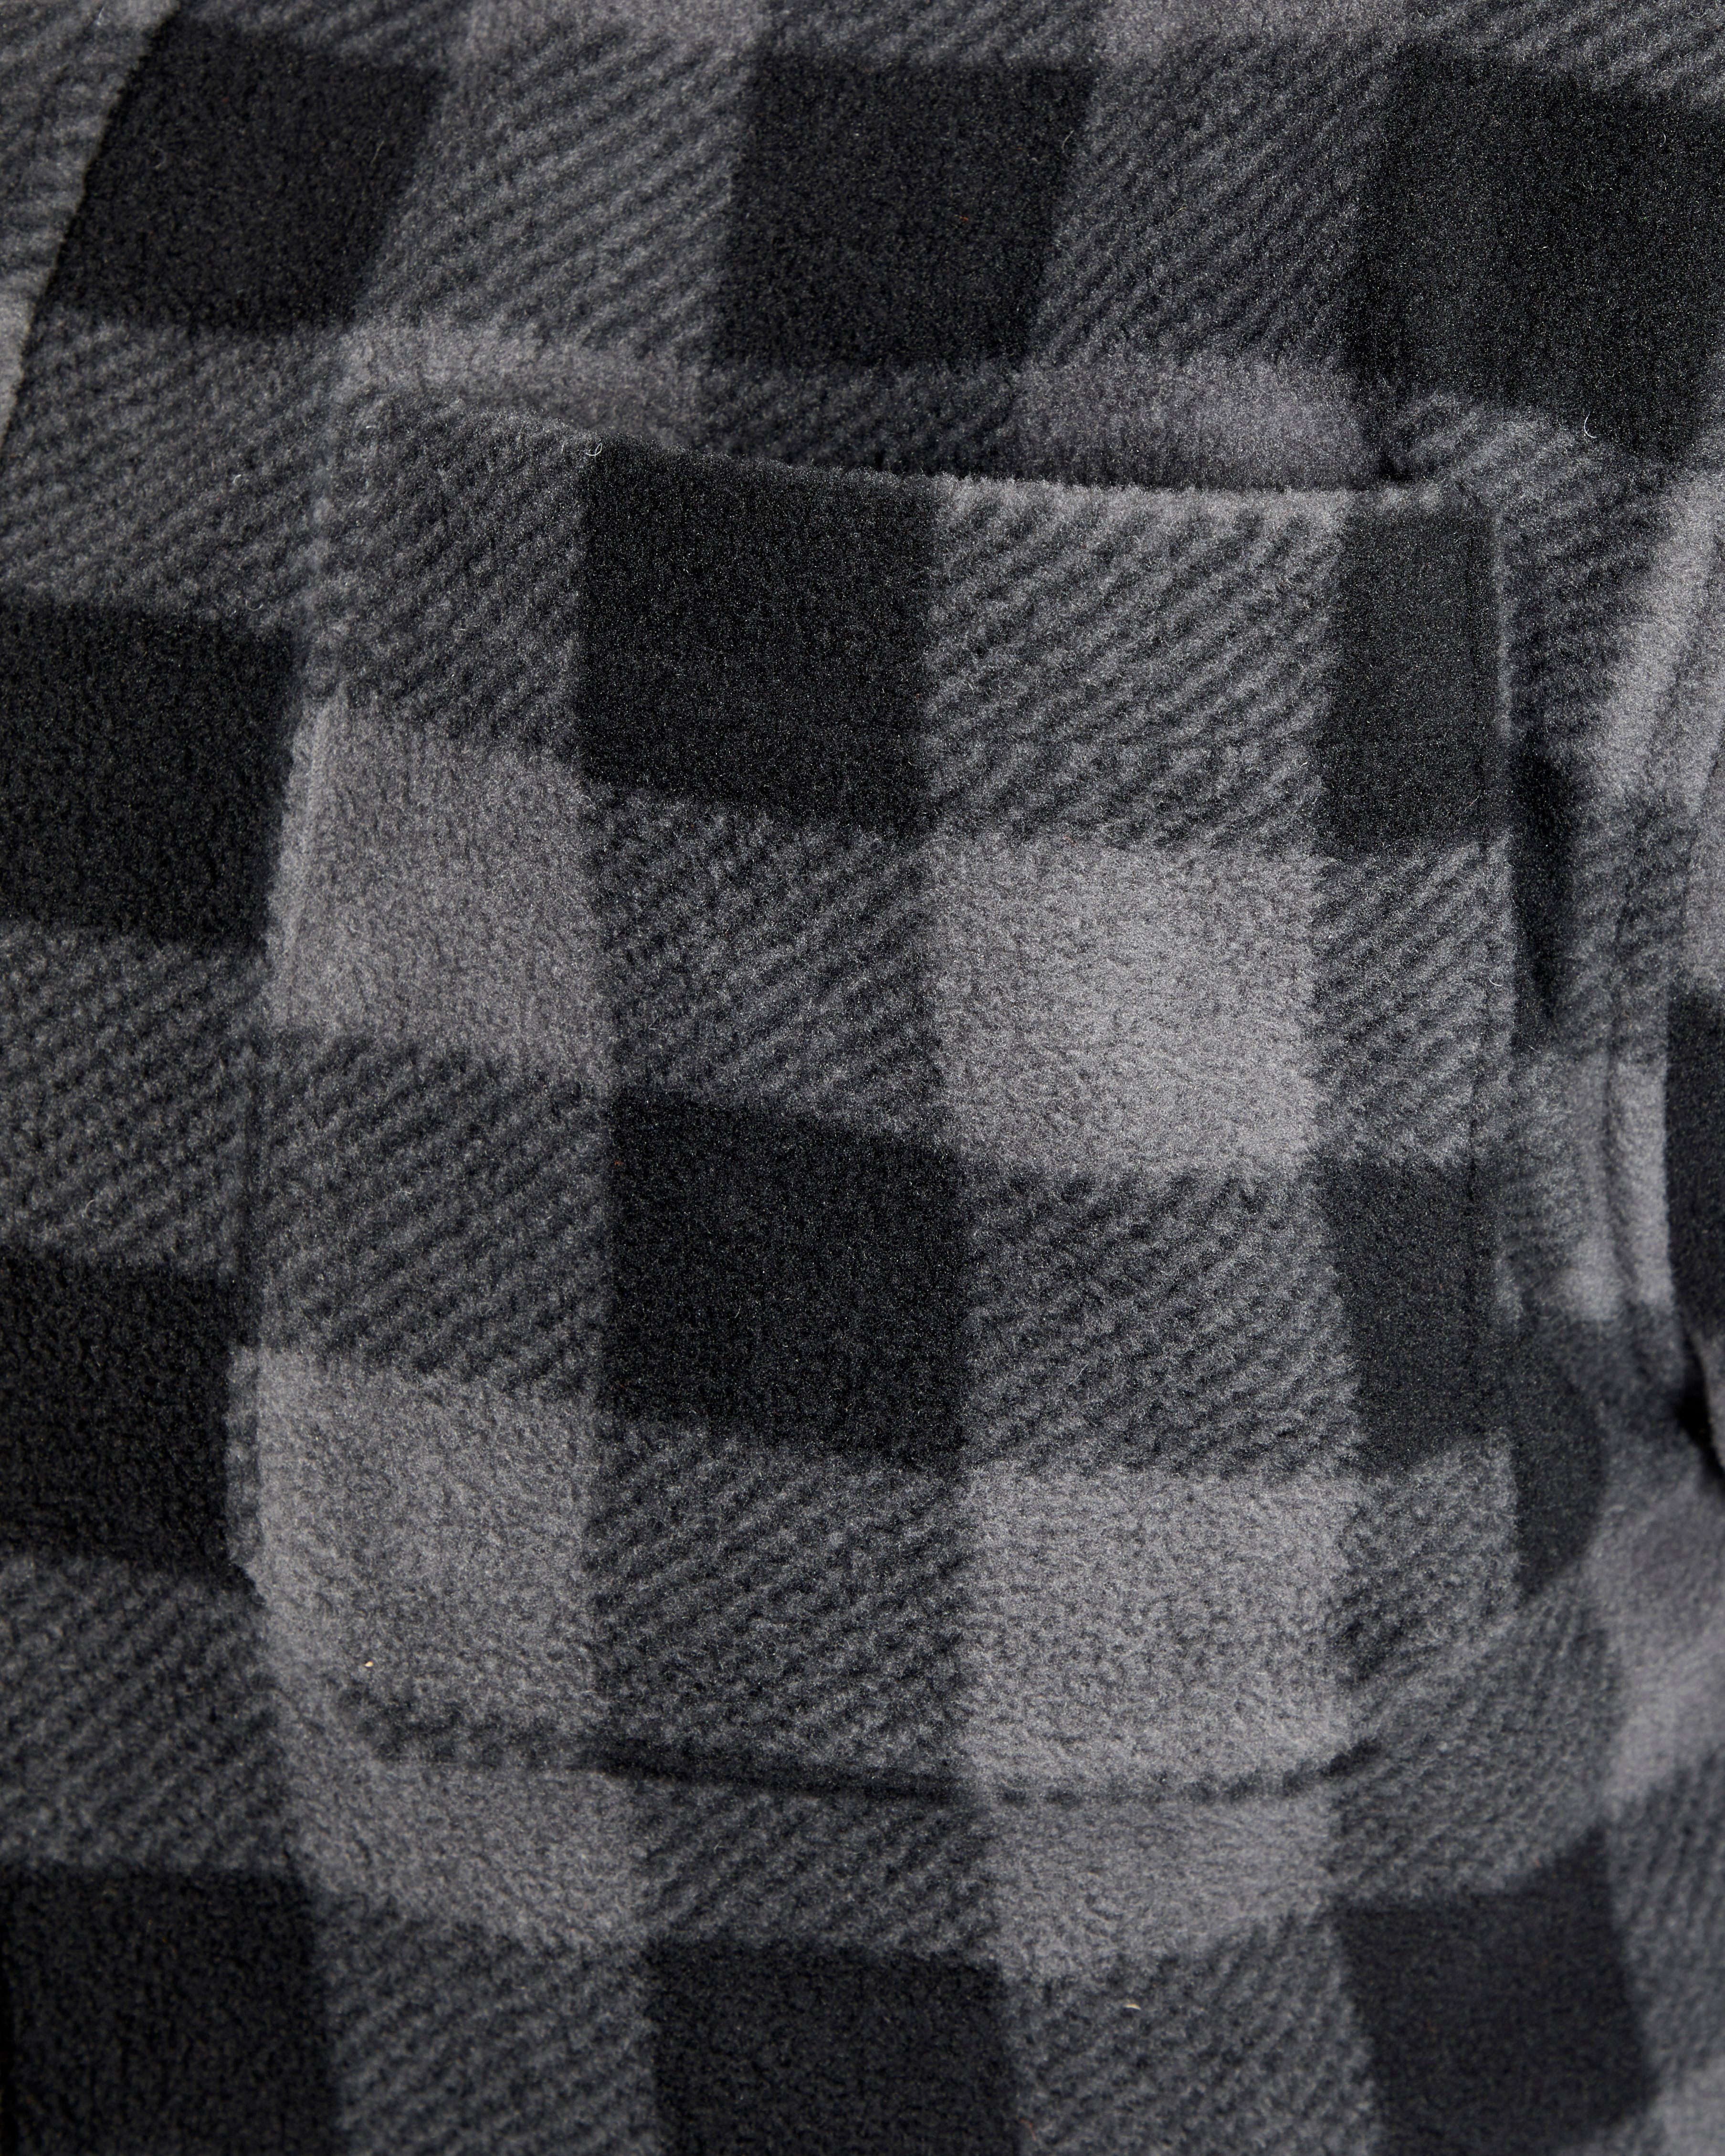 Northern Country Flanellhemd (als Jacke zu mit offen mit zugeknöpft Rücken, tragen) oder Taschen, grau-schwarz gefüttert, Hemd verlängertem warm Flanellstoff 5